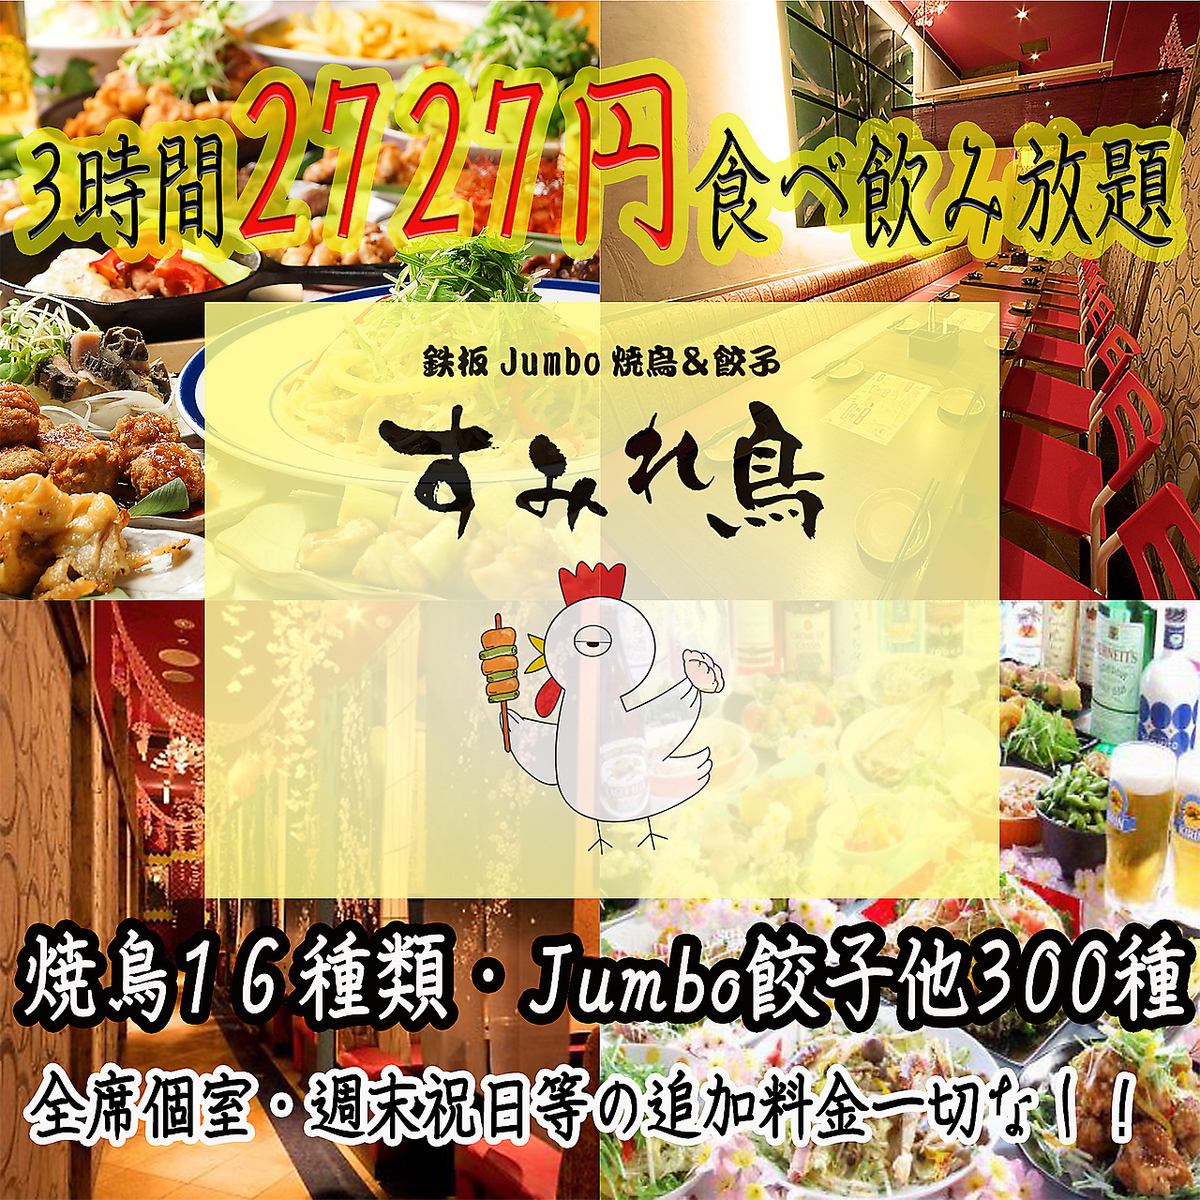 3小时无限畅吃☆烤鸡肉串和鸡肉火锅无限畅吃2,999日元（含税）